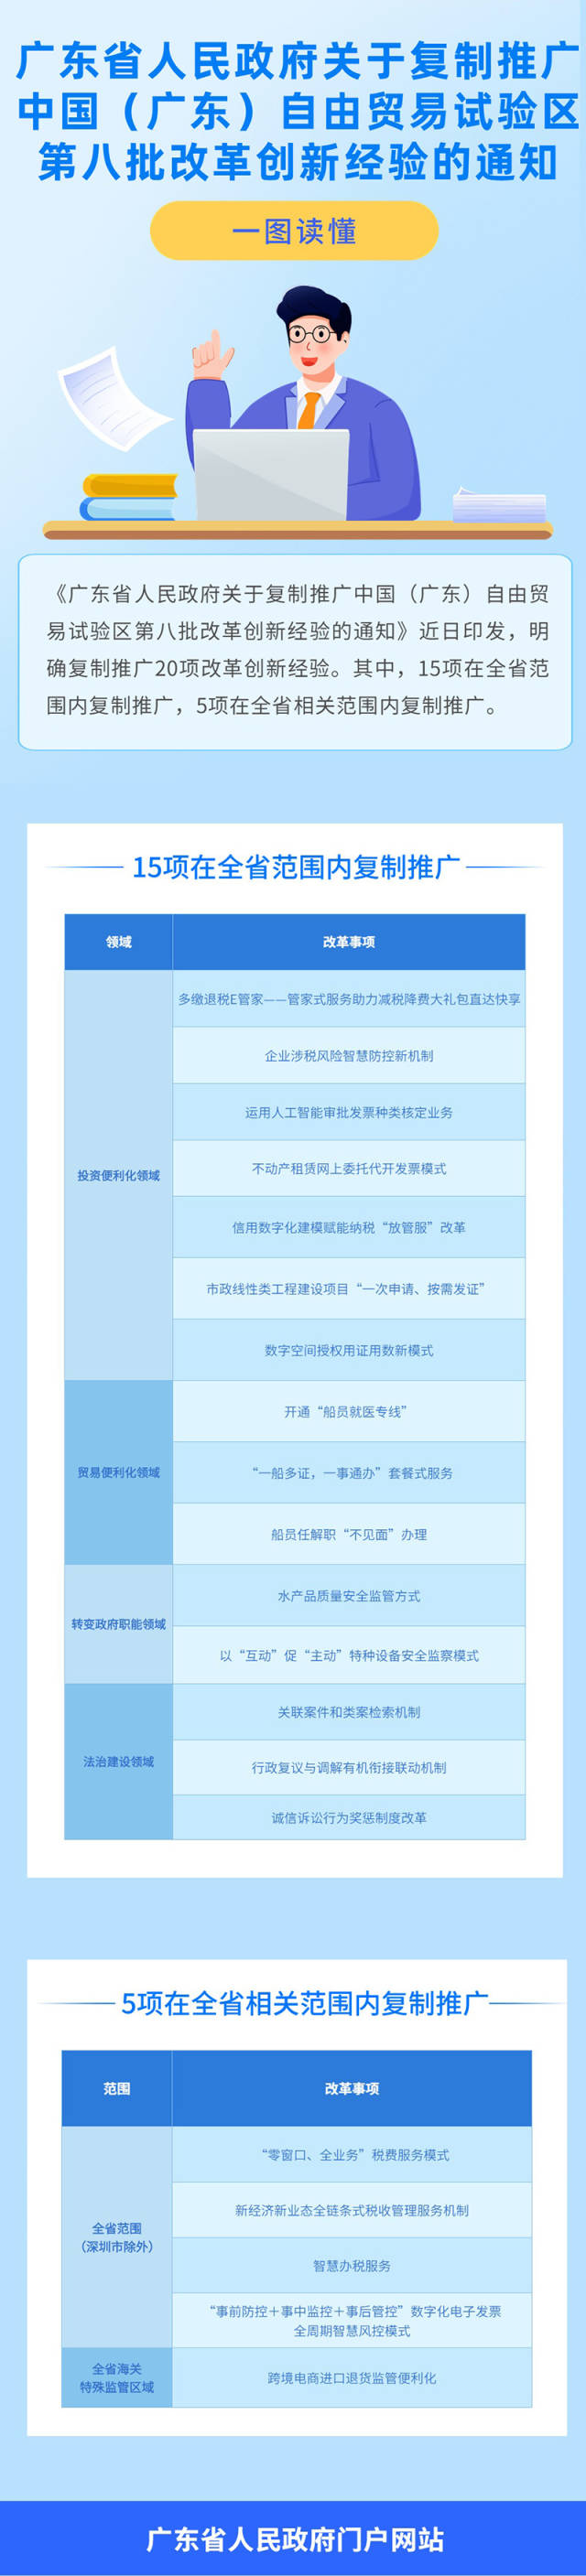 广东自贸试验区20项改革创新经验将复制推广。